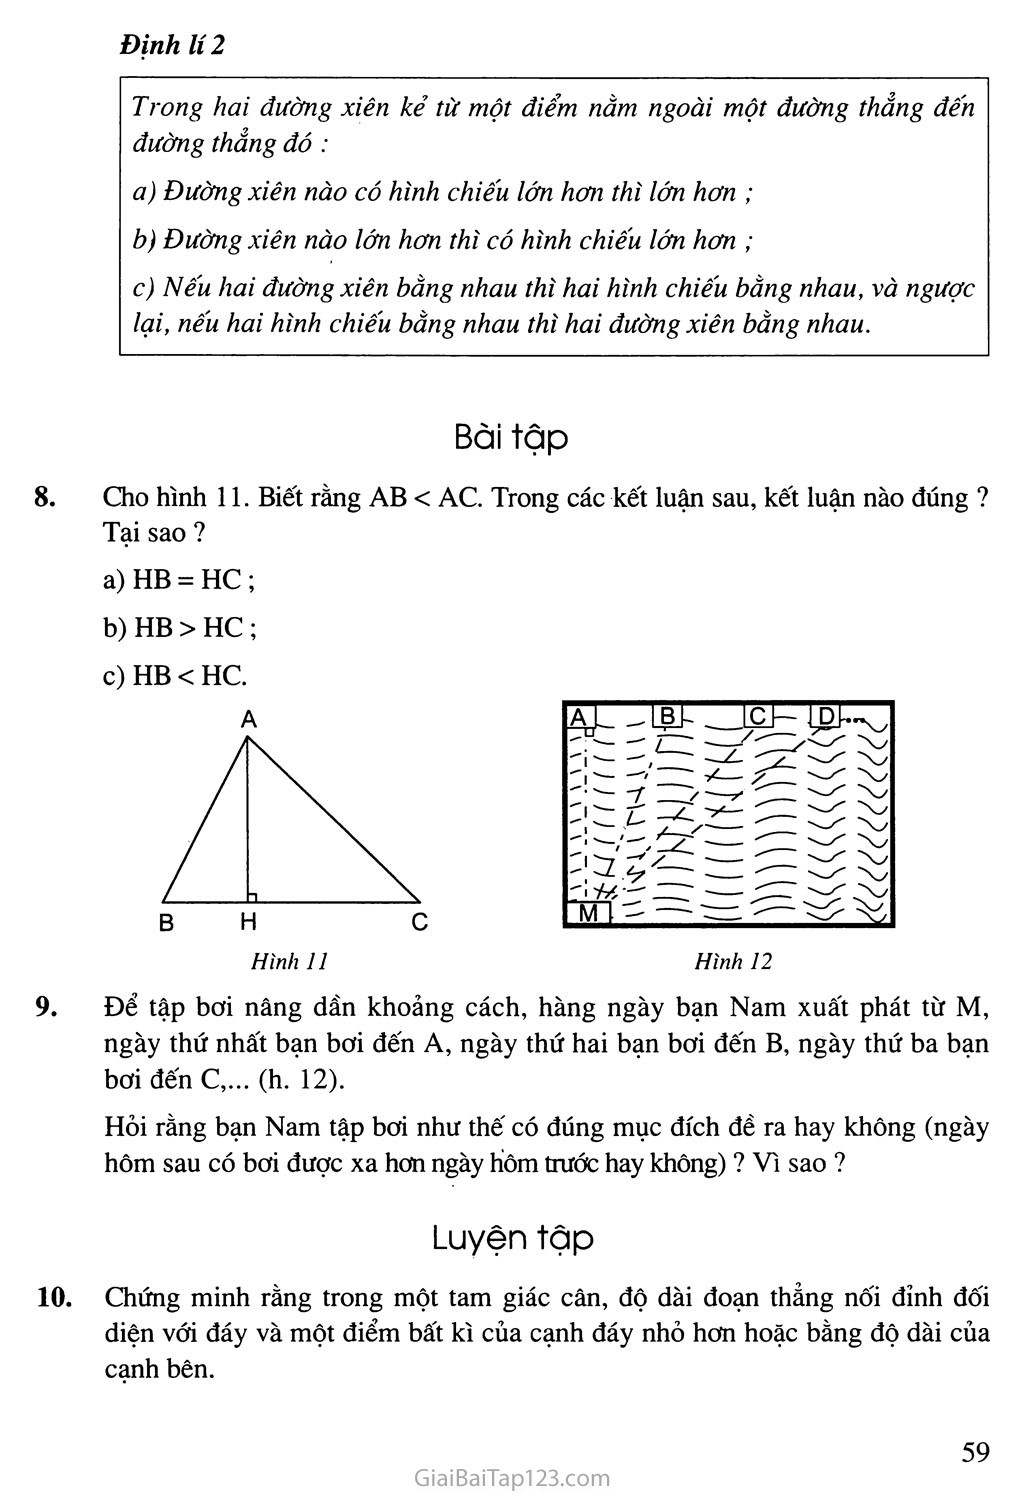 Bài 2. Quan hệ giữa đường vuông góc và đường xiên, đường xiên và hình chiếu trang 3